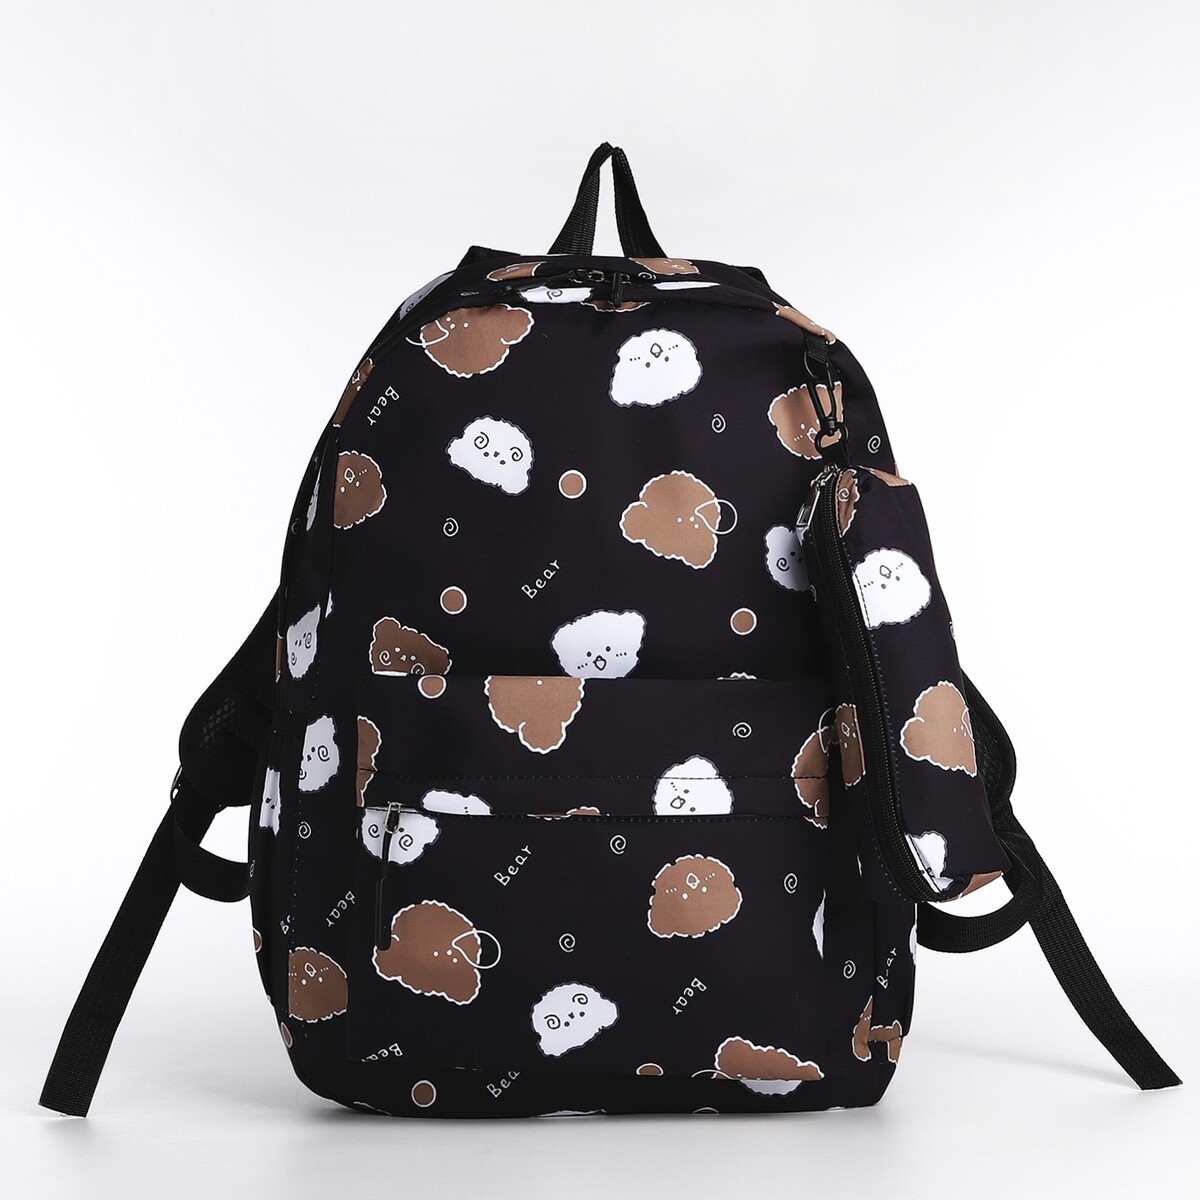 Рюкзак школьный из текстиля на молнии, 3 кармана, пенал, цвет черный рюкзак школьный из текстиля на молнии 3 кармана пенал белый разно ный